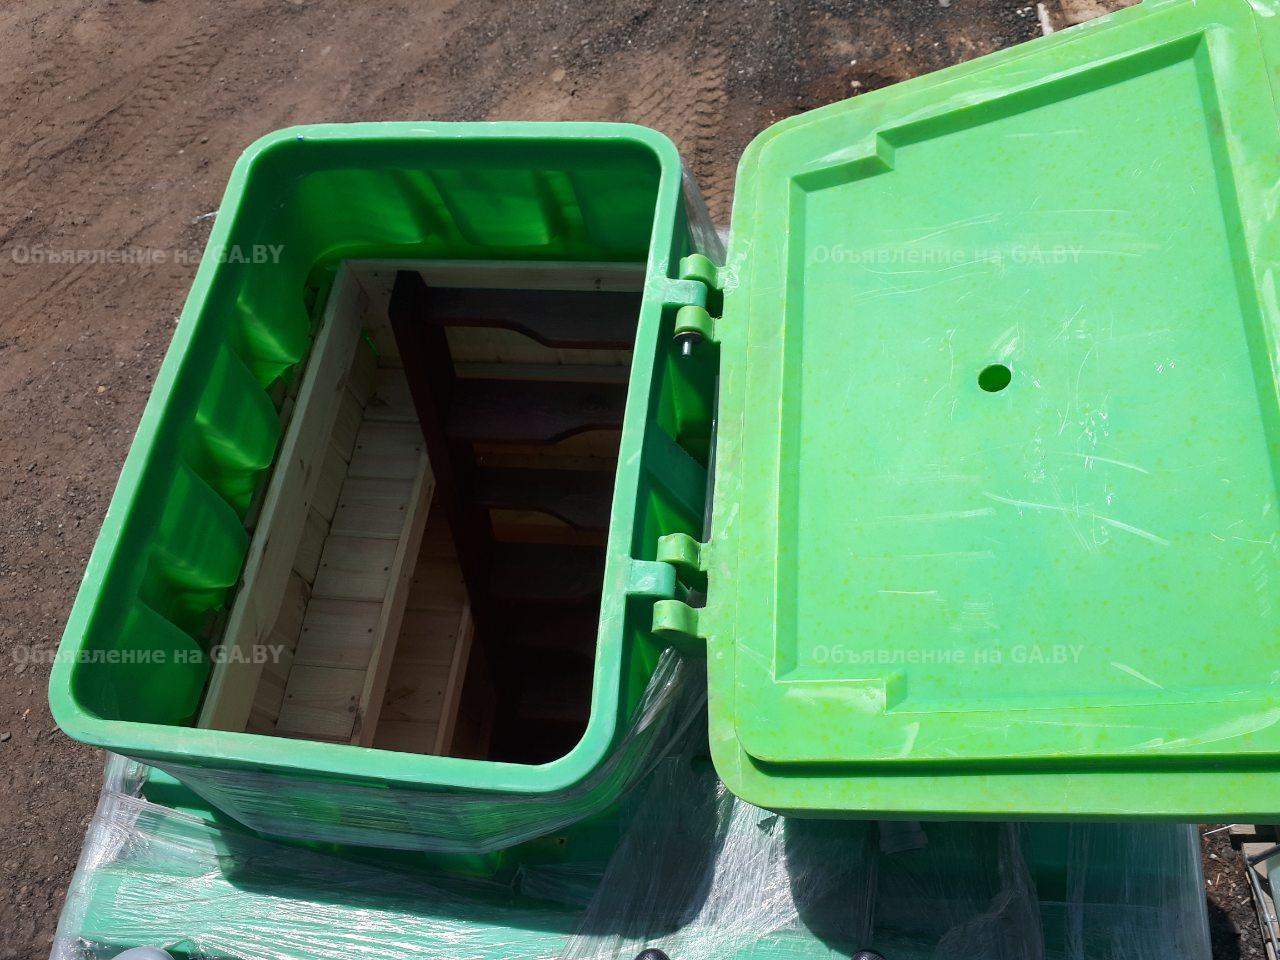 Продам Пластиковый погреб Тортила 2.0 на 7м3 для дома и дачи - GA.BY